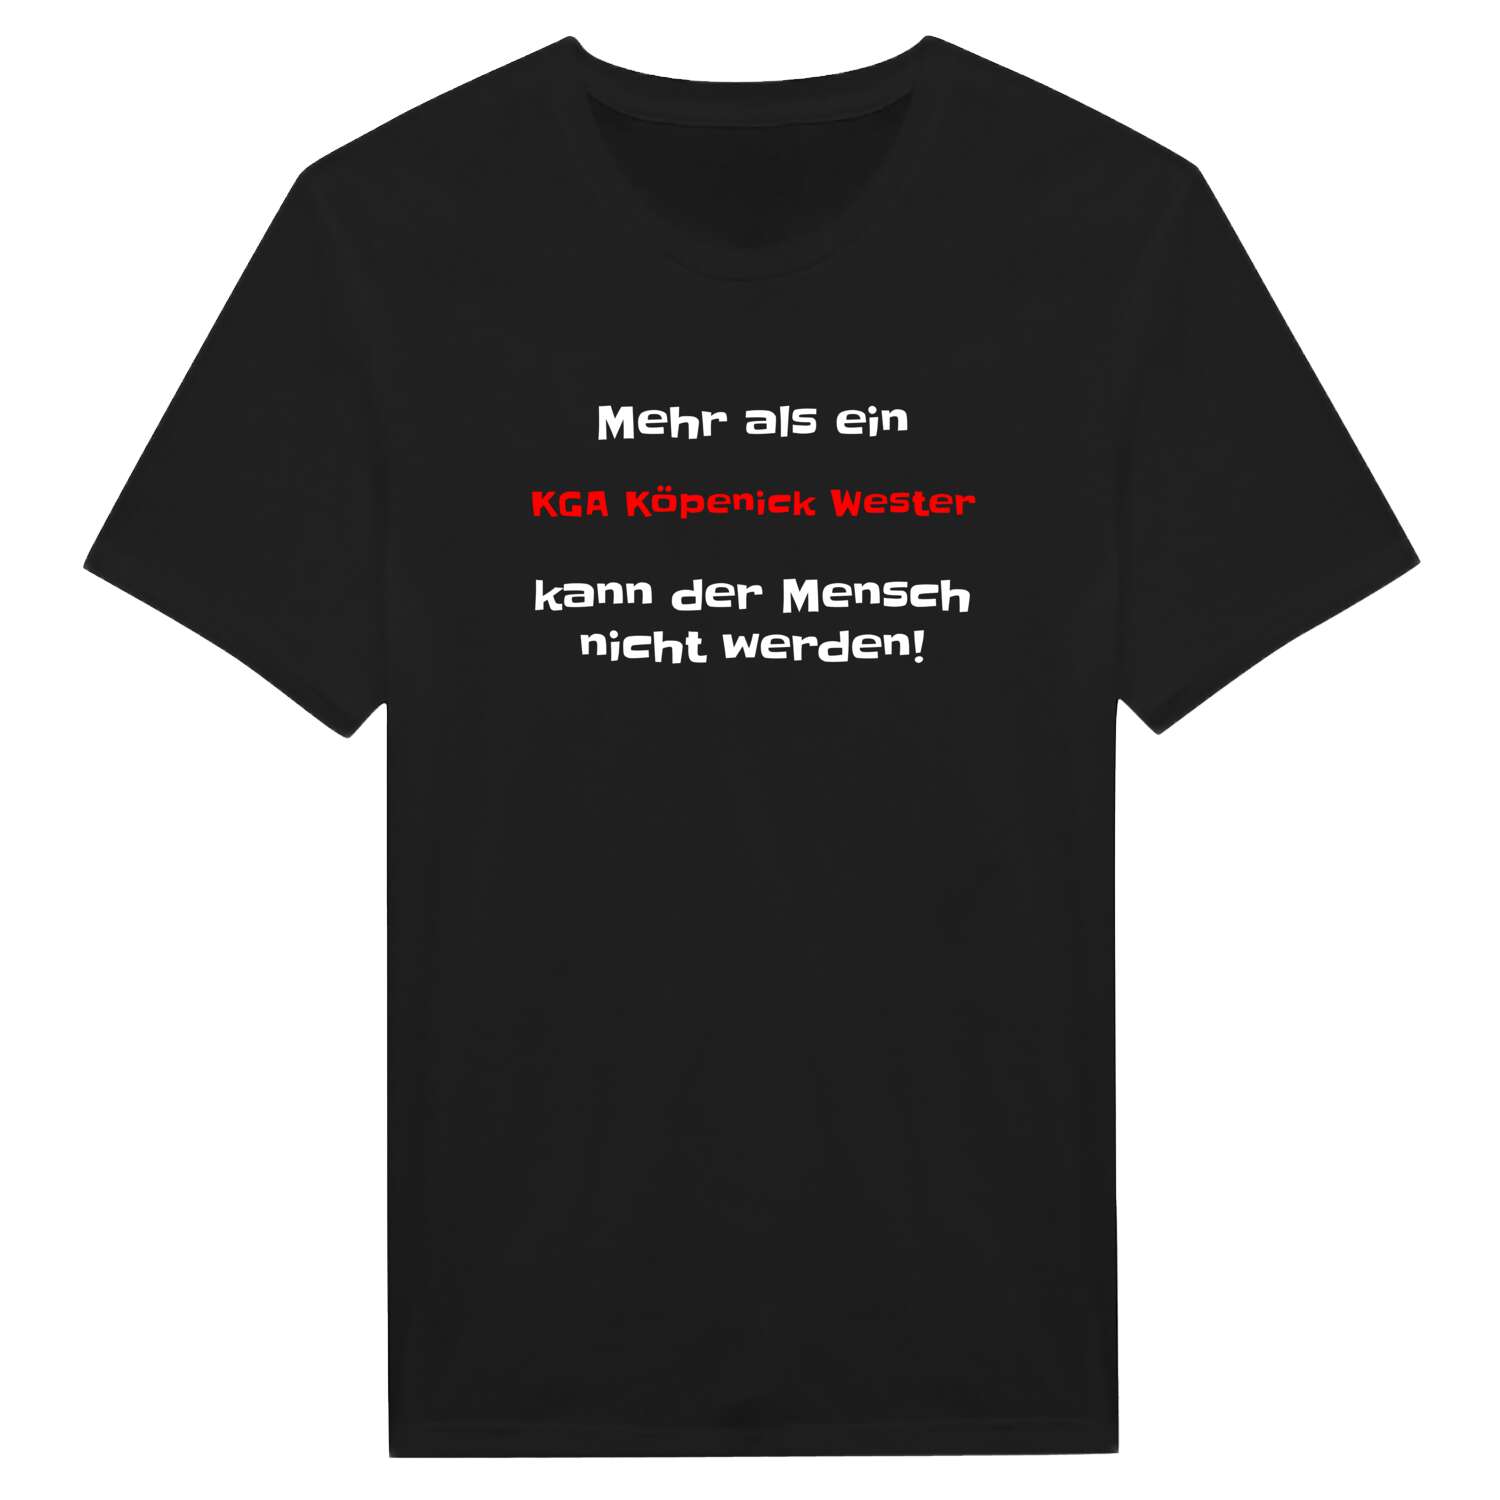 KGA Köpenick West T-Shirt »Mehr als ein«